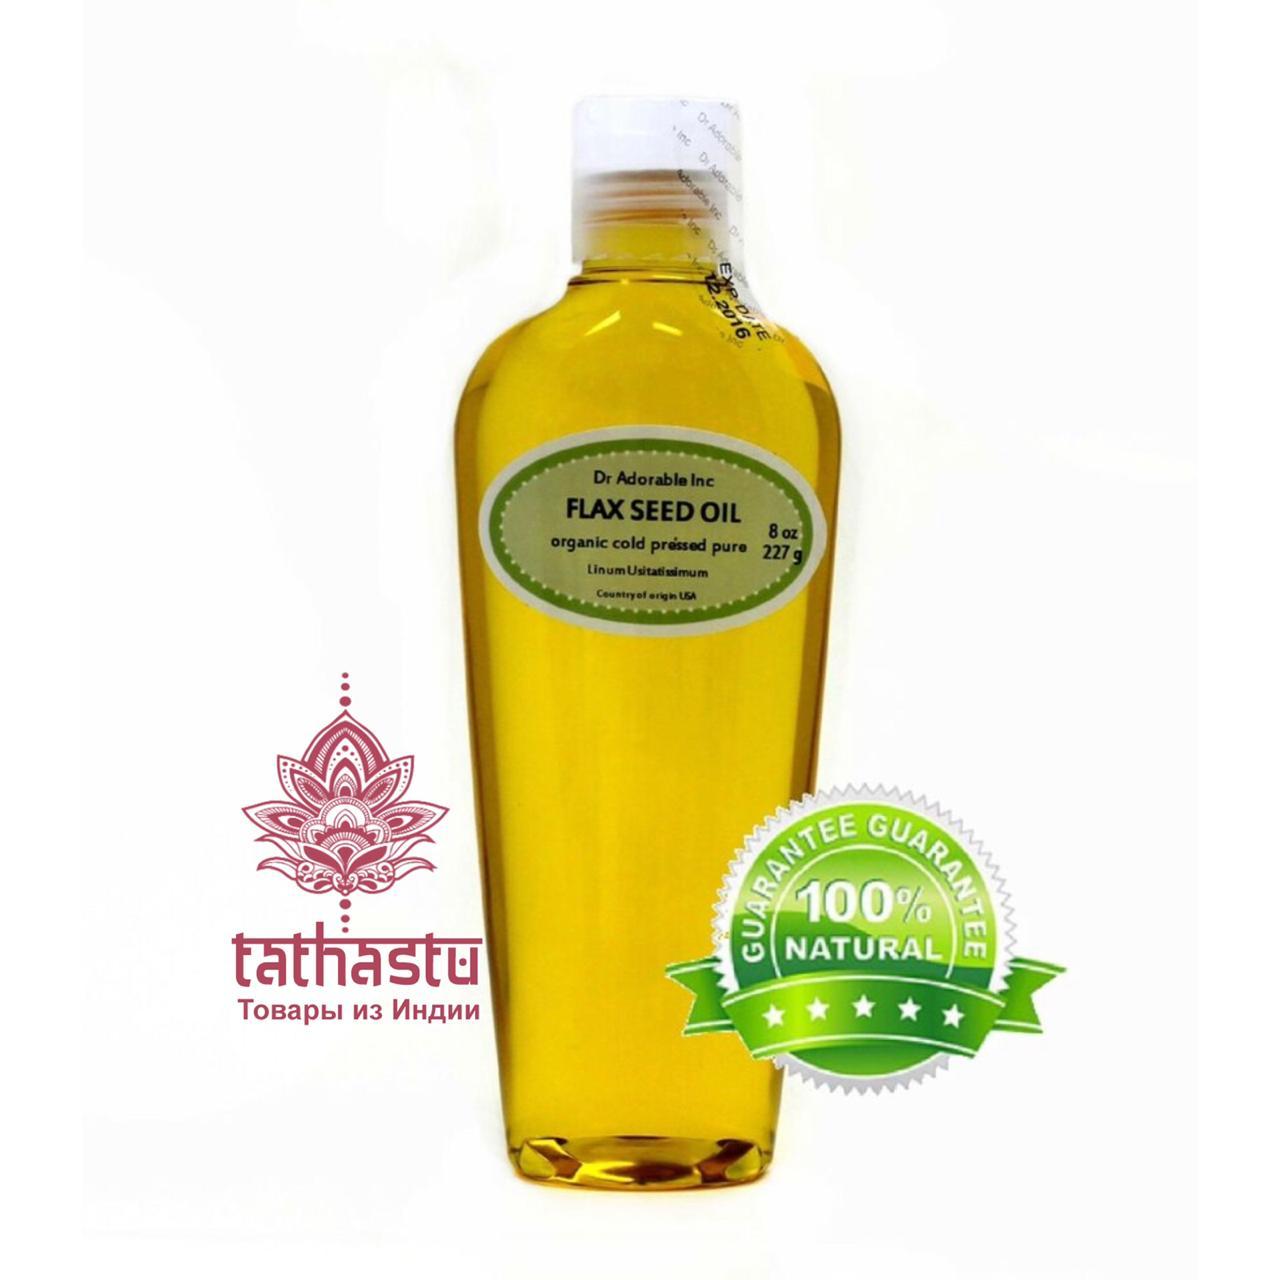 Flax Seed Oil - льняное масло. Tathastu товары и индии